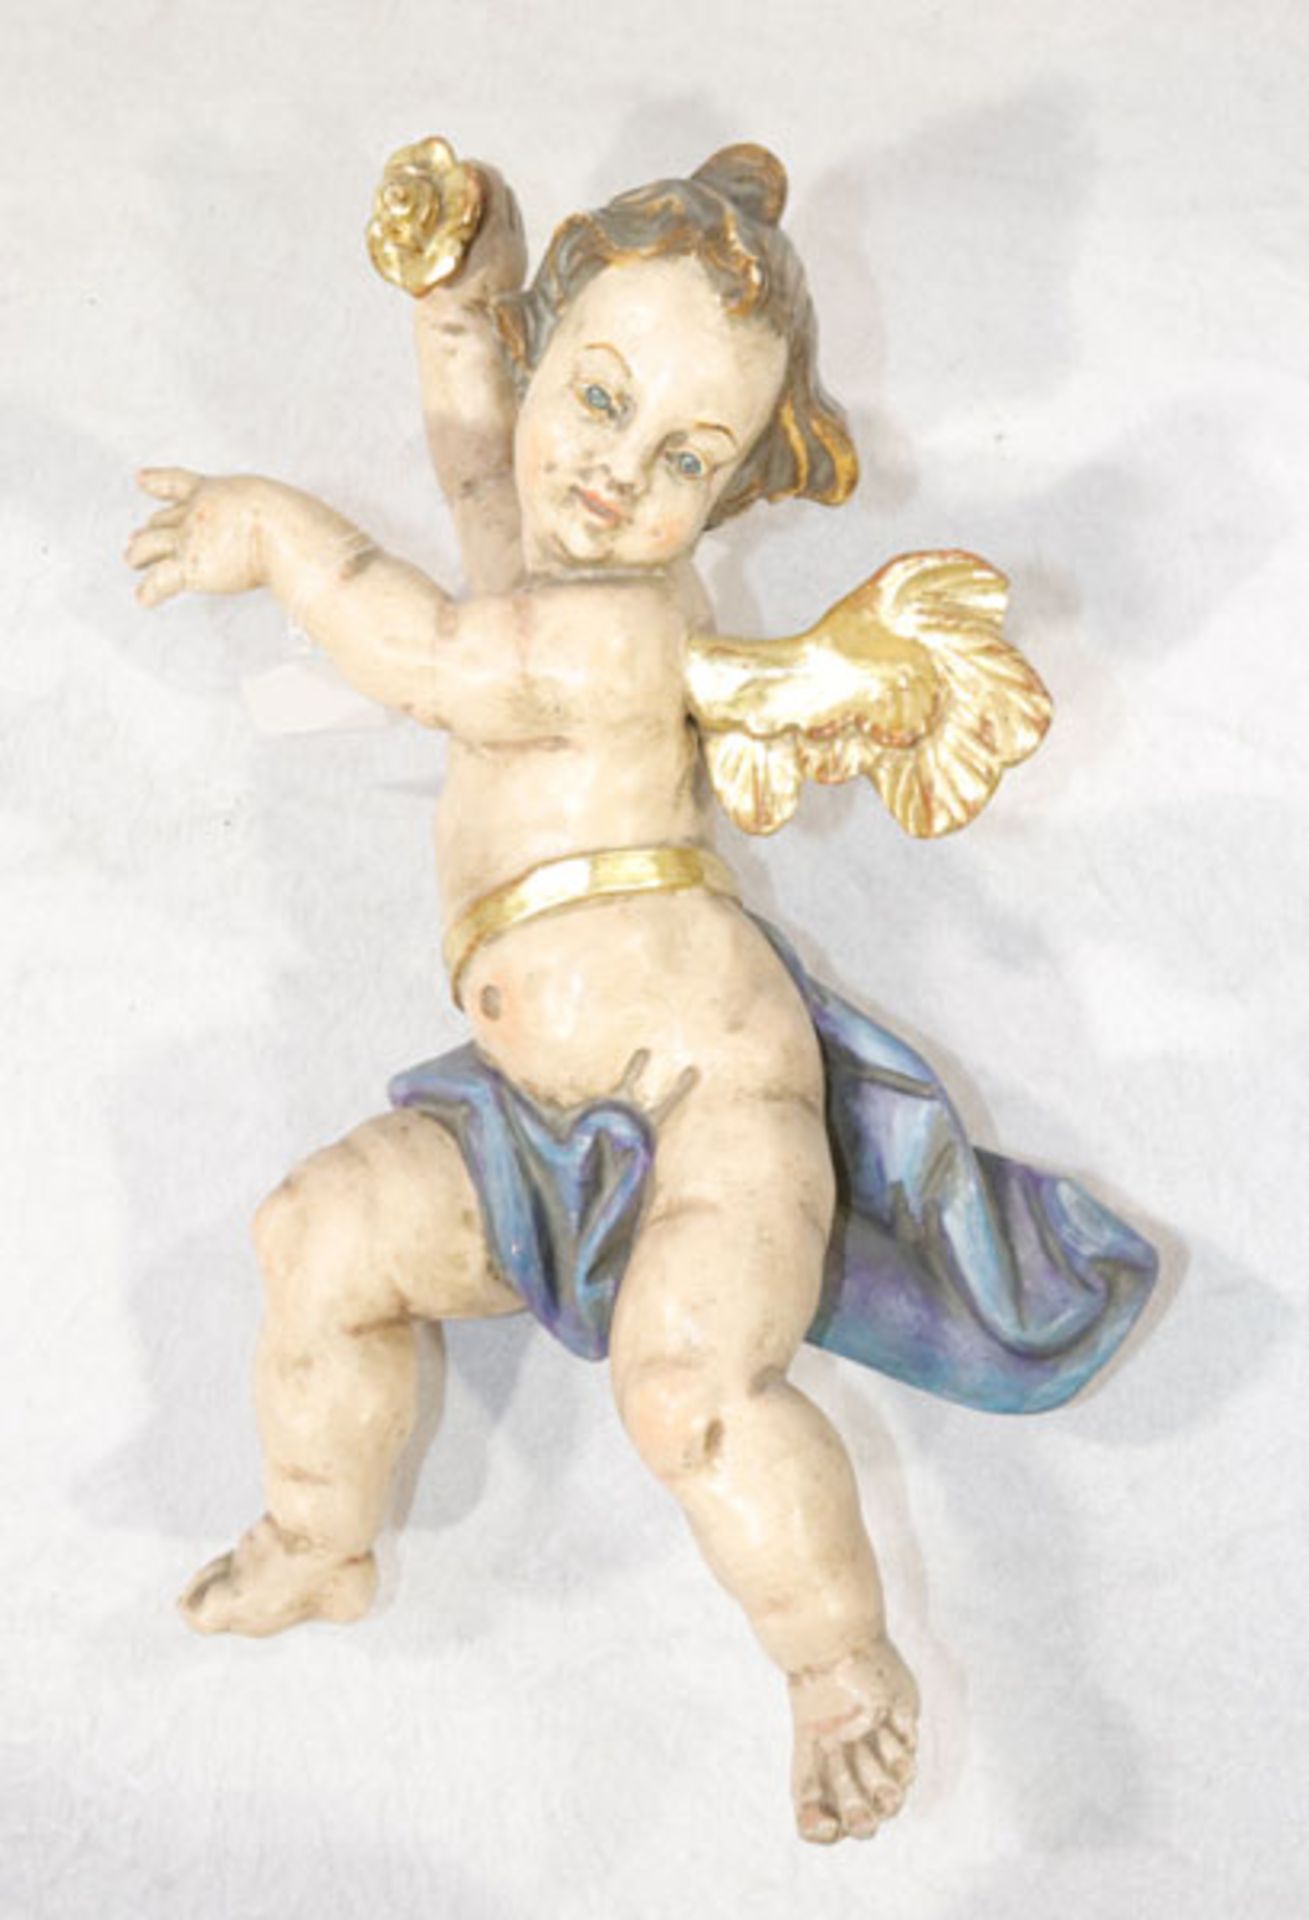 Holz Figurenskulptur 'Engel mit Rose', farbig gefaßt, beschädigt und geklebt, H 35 cm, B 25 cm, T 11